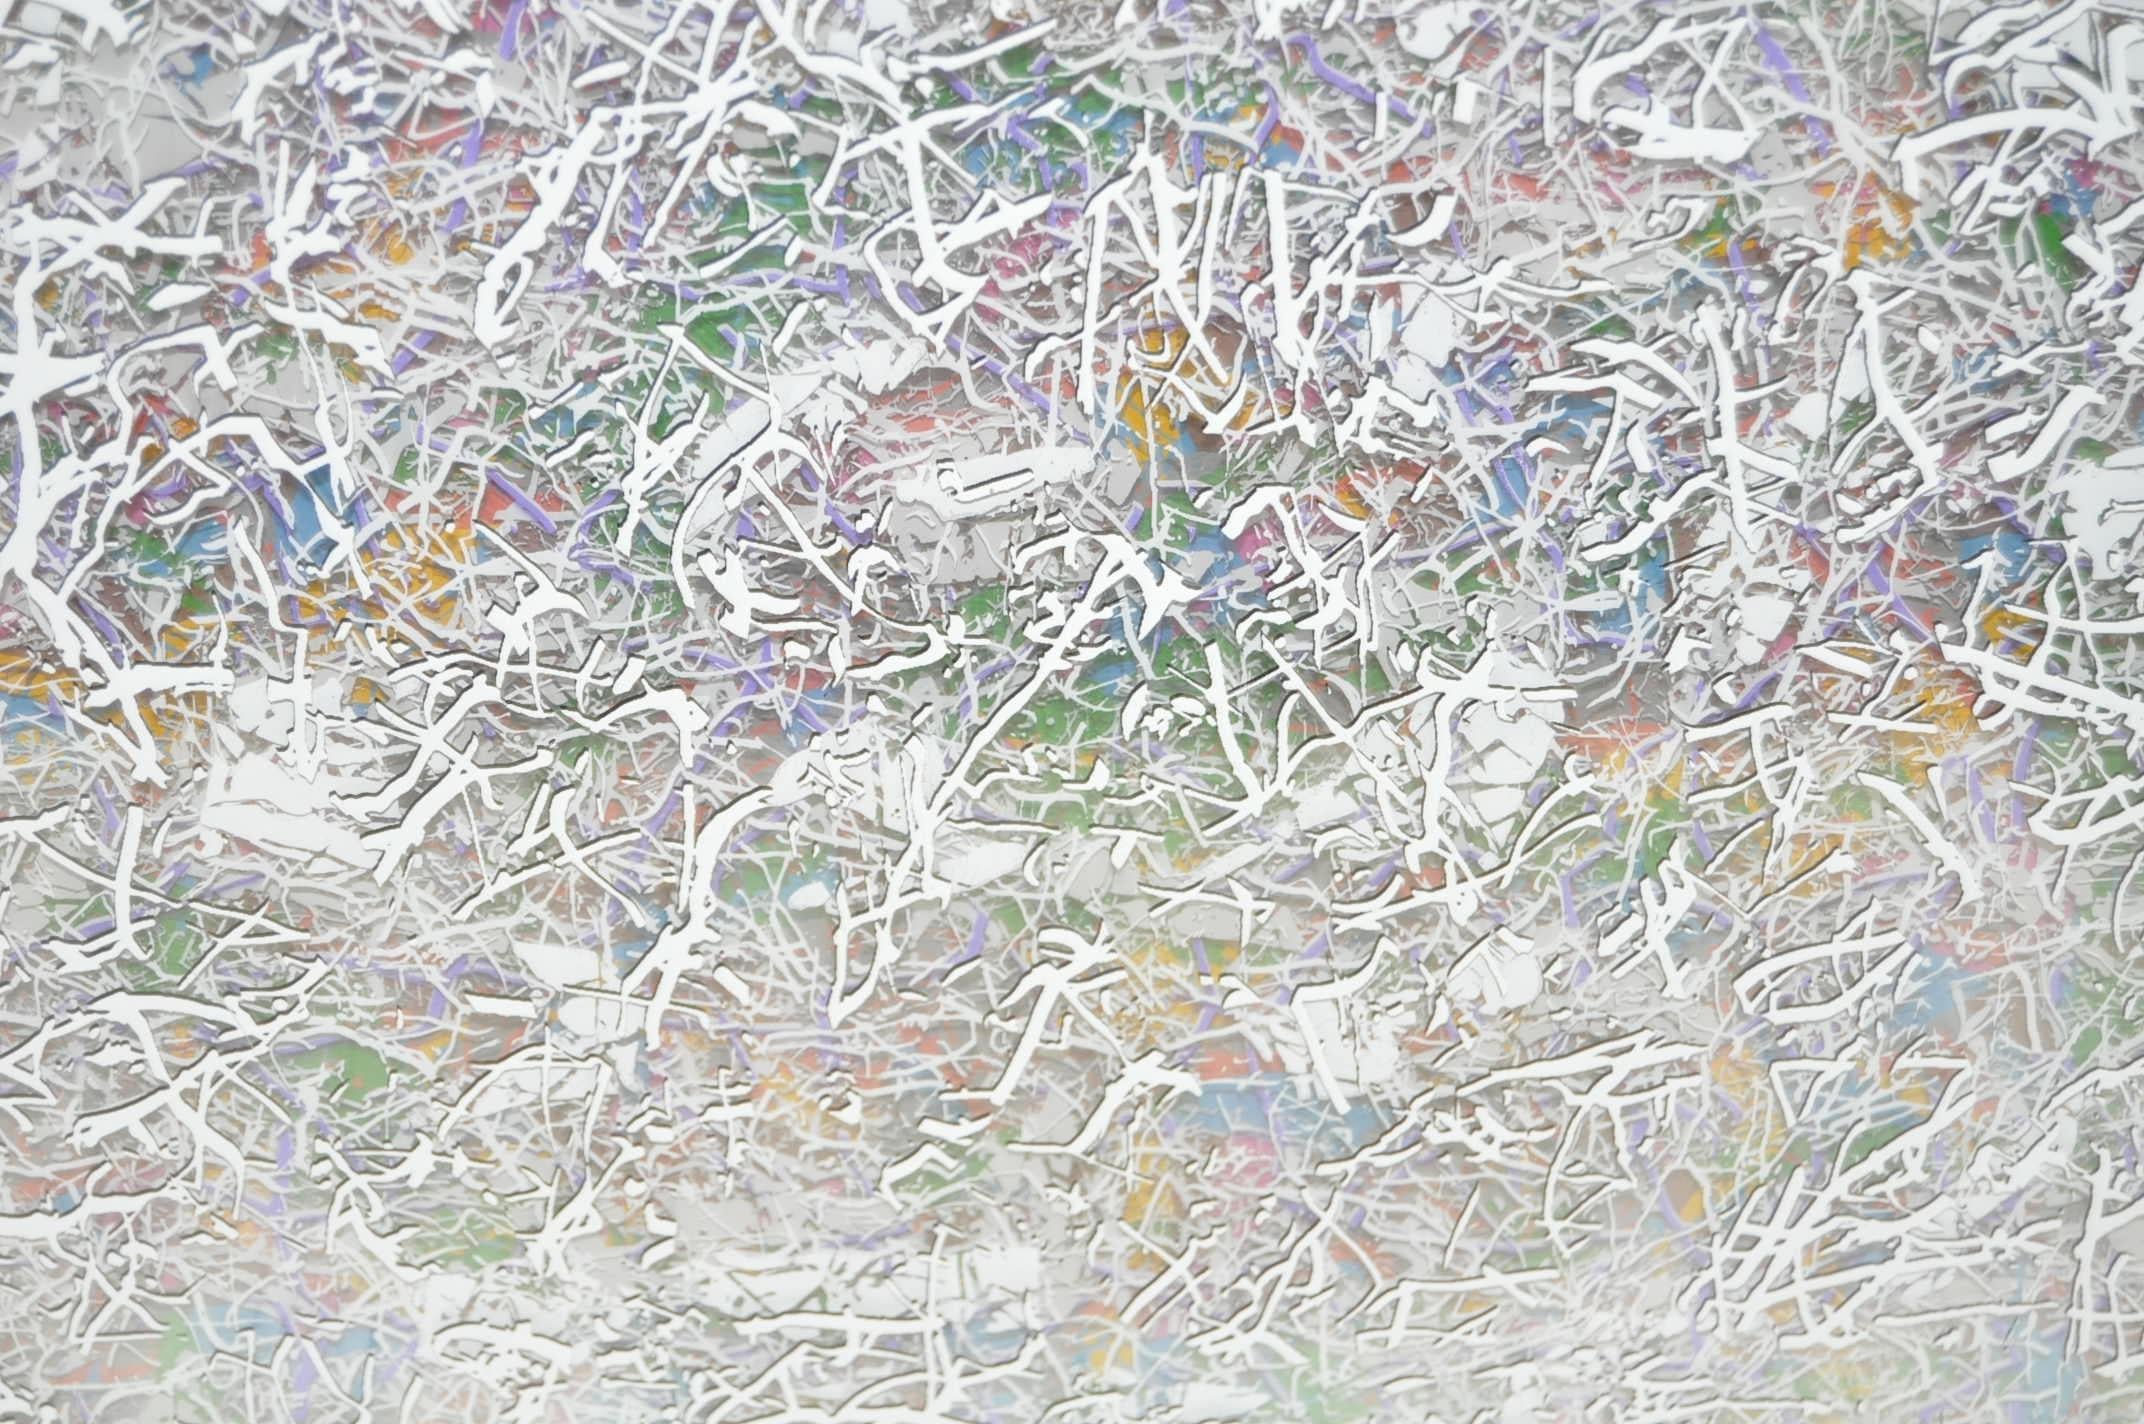 Paul Slapion (Américain, 20e siècle) peinture abstraite à techniques mixtes

Titre : In Each of Us...All of Us #9,

vers 1985

Une belle peinture mixte créée avec de nombreuses couches de verre, d'encre et d'huile.

Un art optique